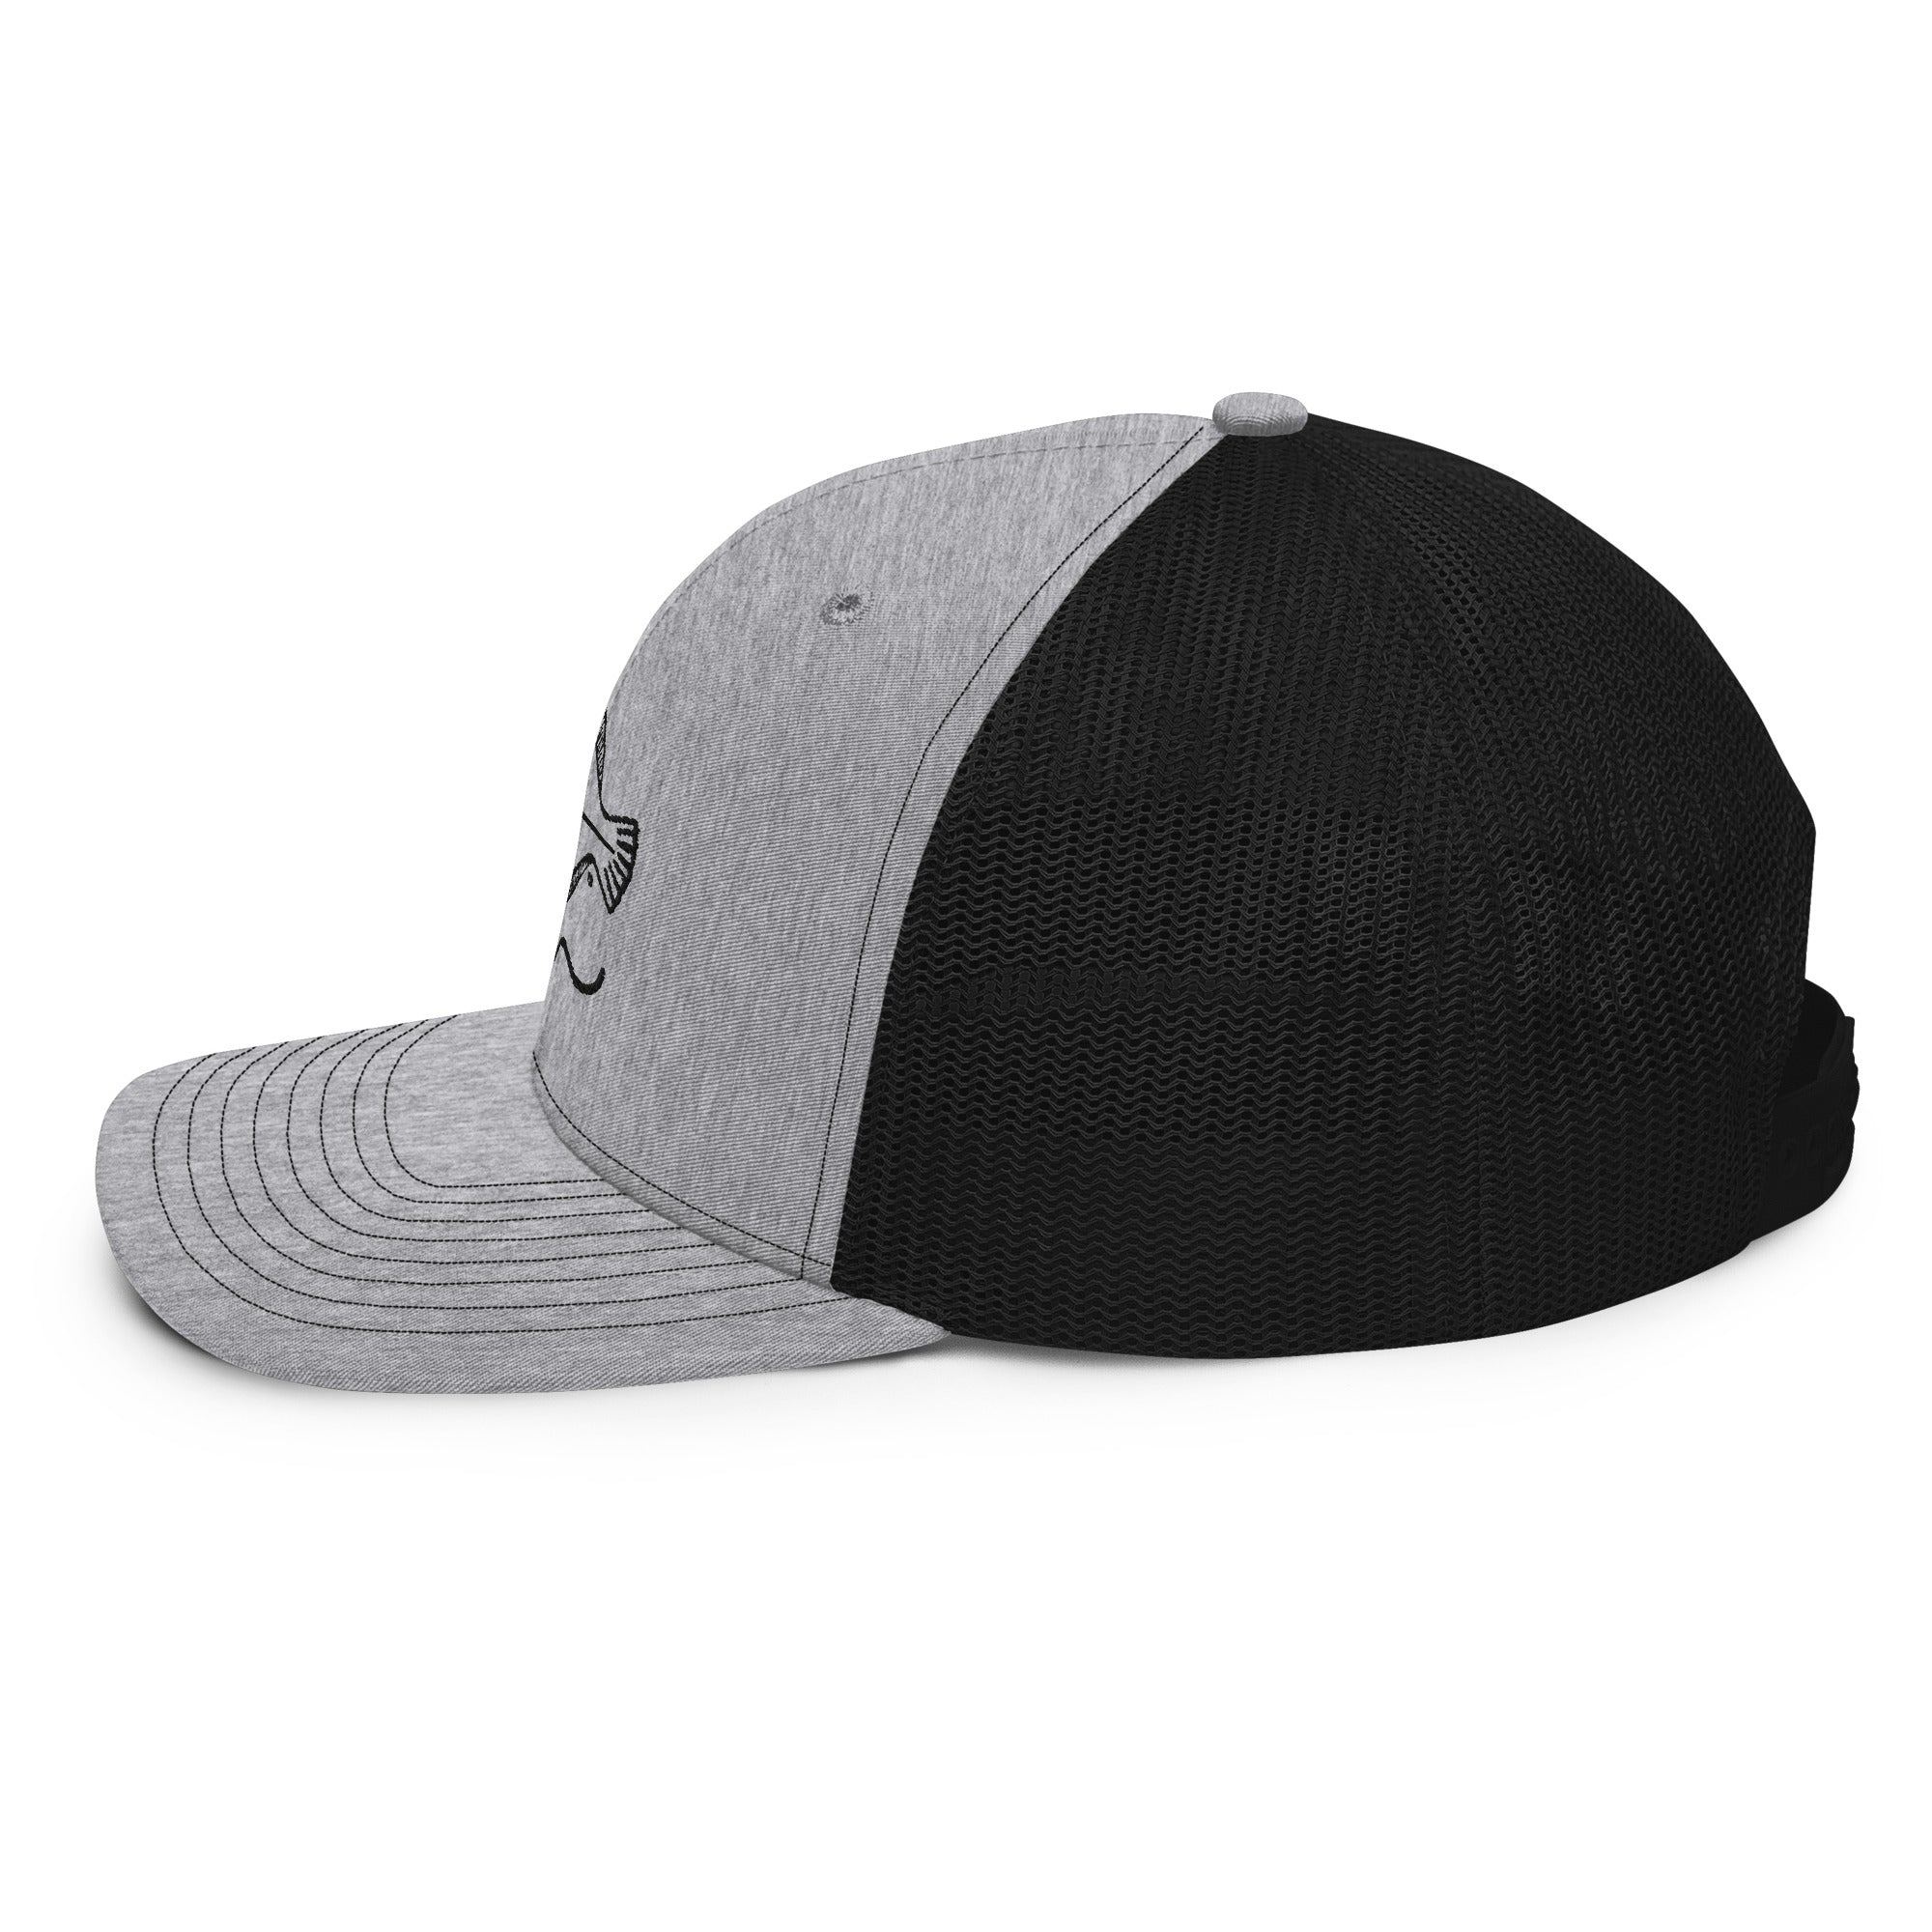 JFA Grey / Black color - Mesh Back Trucker Cap